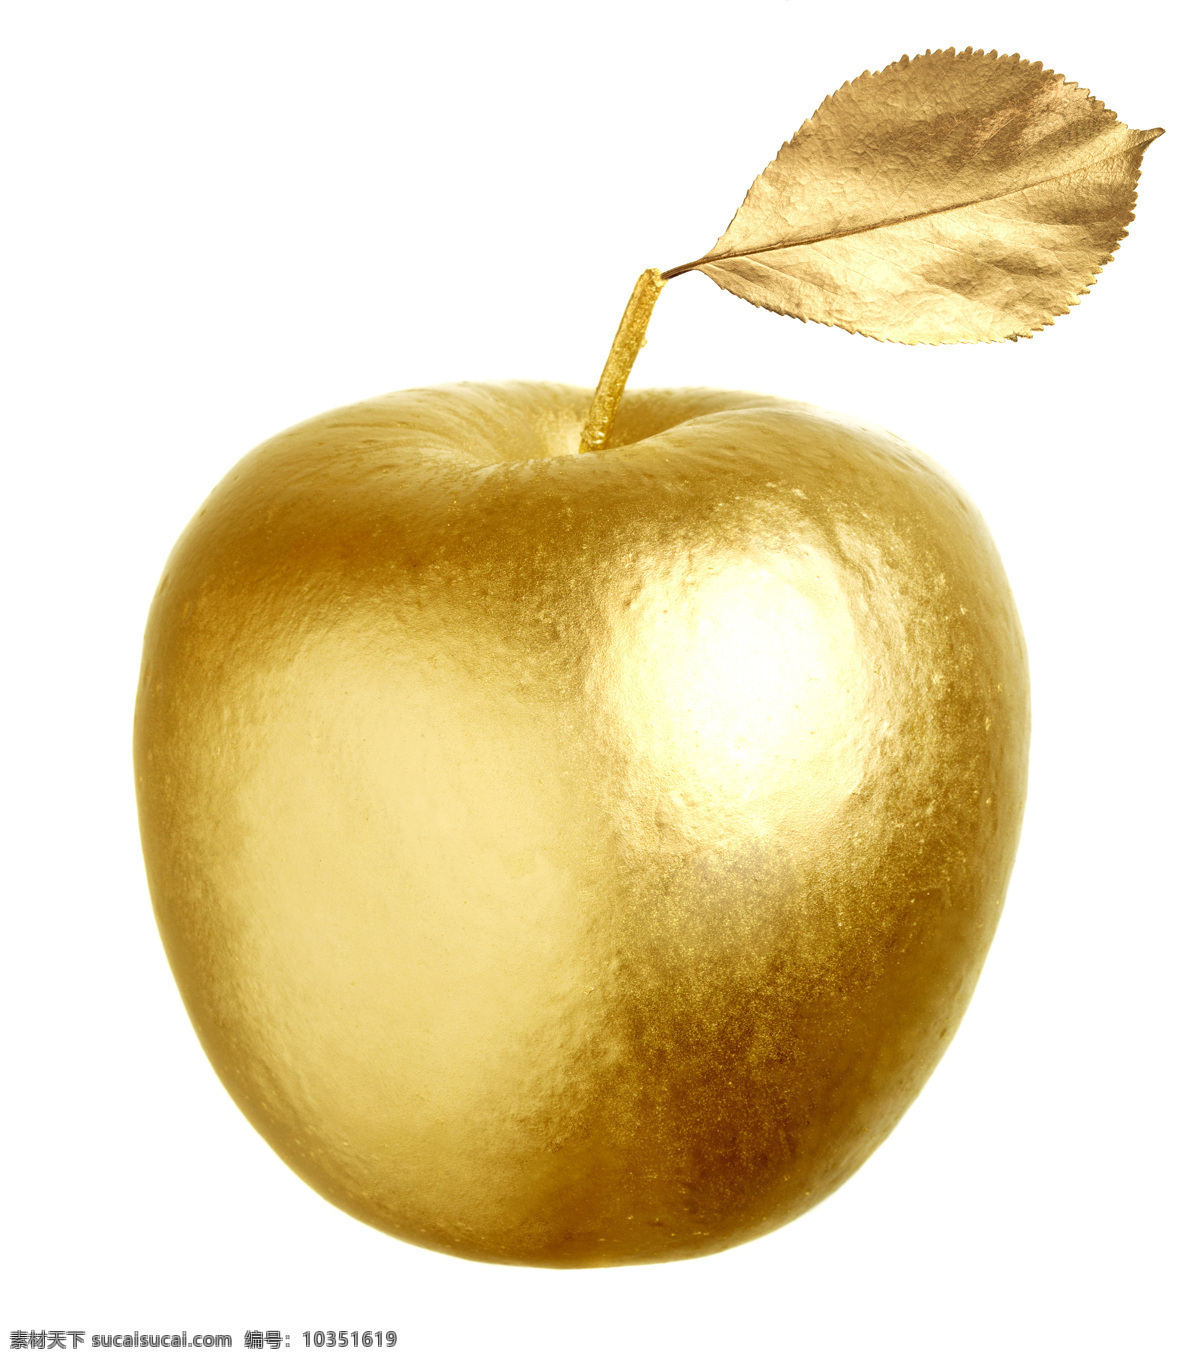 金色苹果 金色水果 金色梨 梨 黄金 金色 金黄色 镀金 水果图片 苹果 青椒 金色青椒 水果组合 金苹果素材